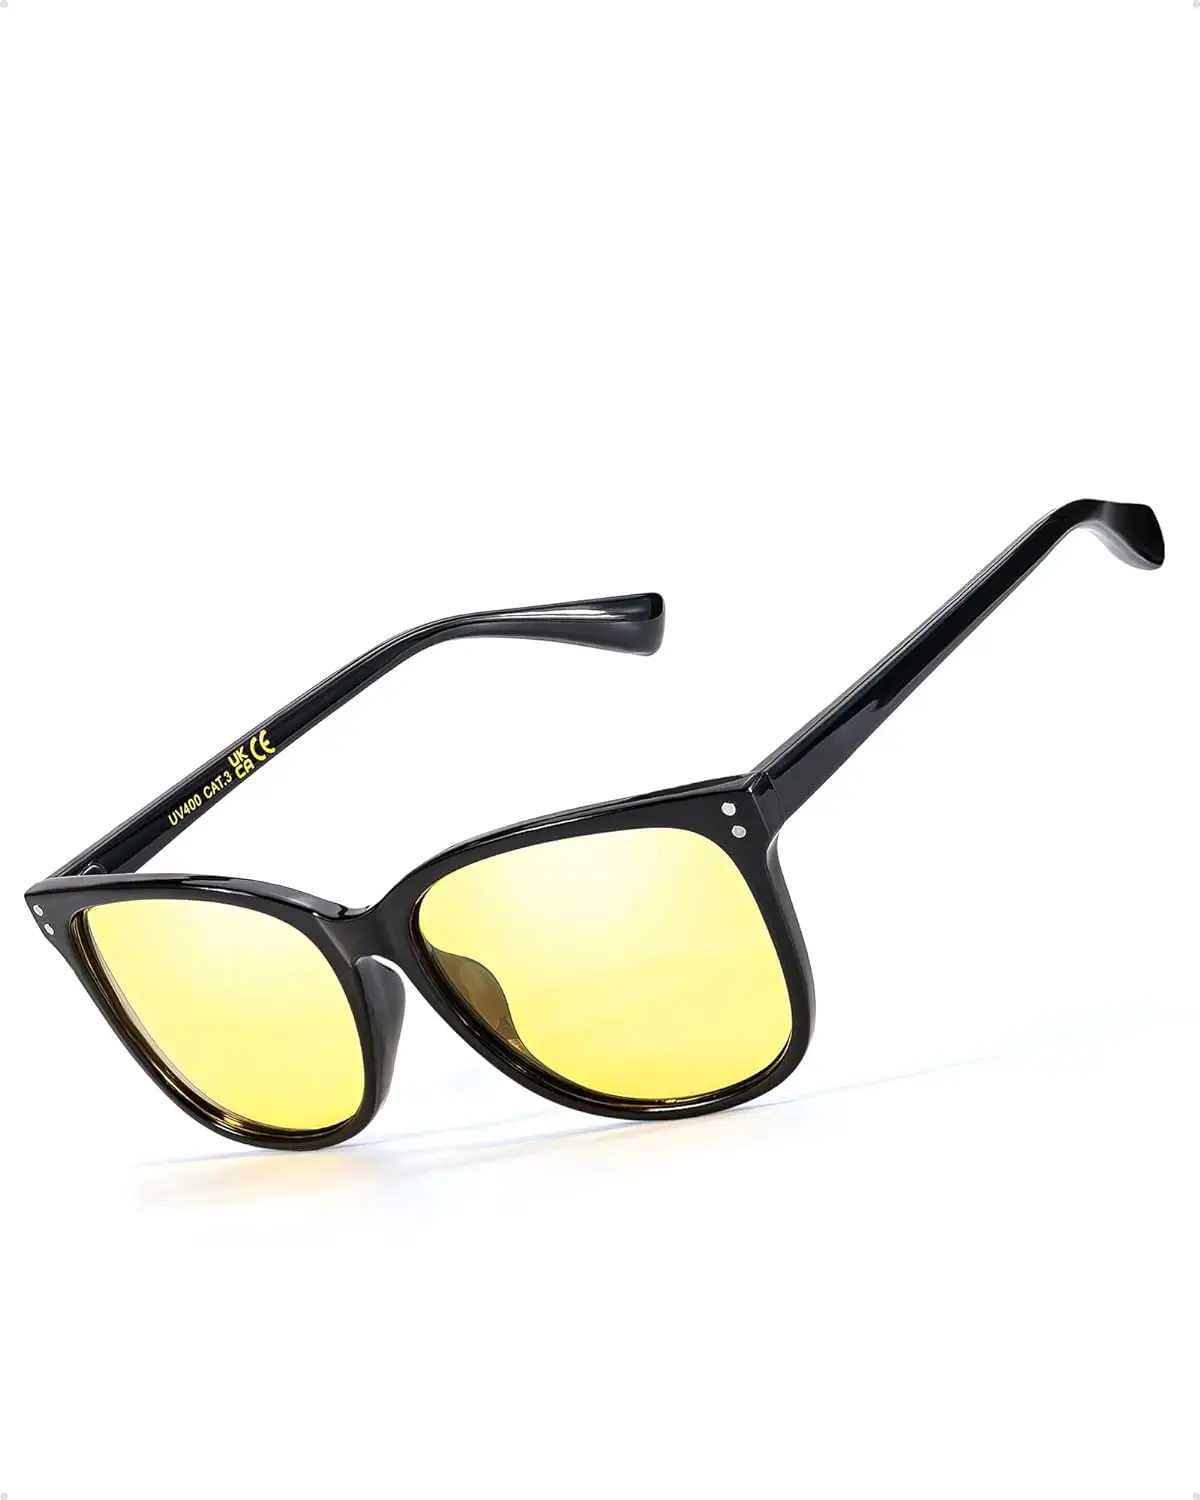 

LVIOE Square Polarized Sunglasses/Night Vision Driving Glasses for Women Men LN22526